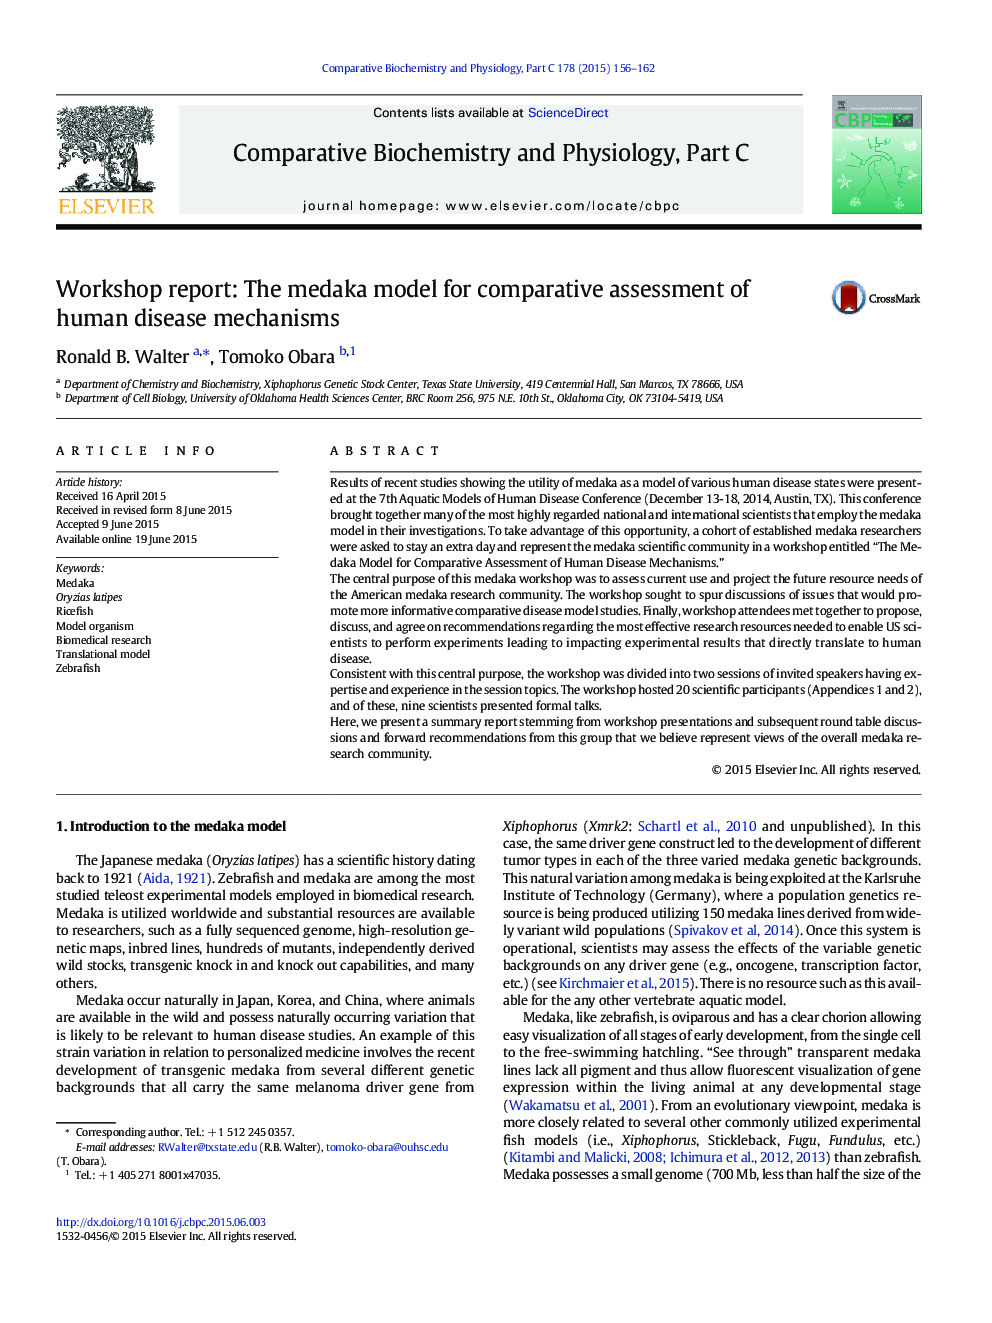 گزارش کارگاه: مدل مداکا برای ارزیابی مقایسه مکانیسم های بیماری های انسانی 